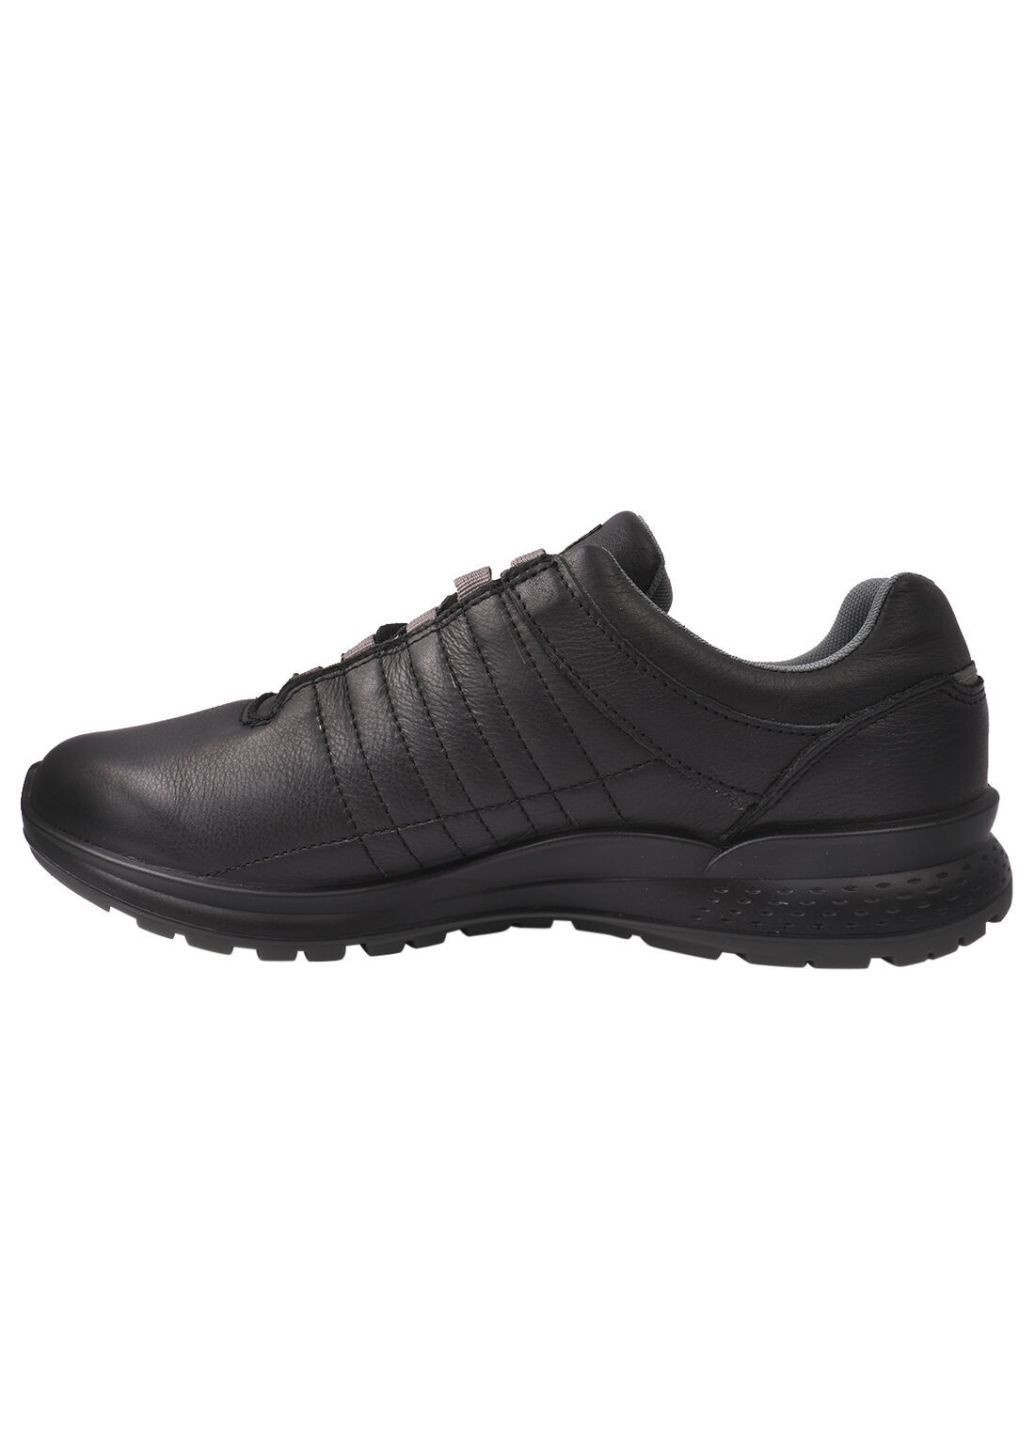 Черные туфли спорт мужские из натуральной кожи, на низком ходу, на шнуровке, черные, италия gri sport Grisport 82-20/24DTS